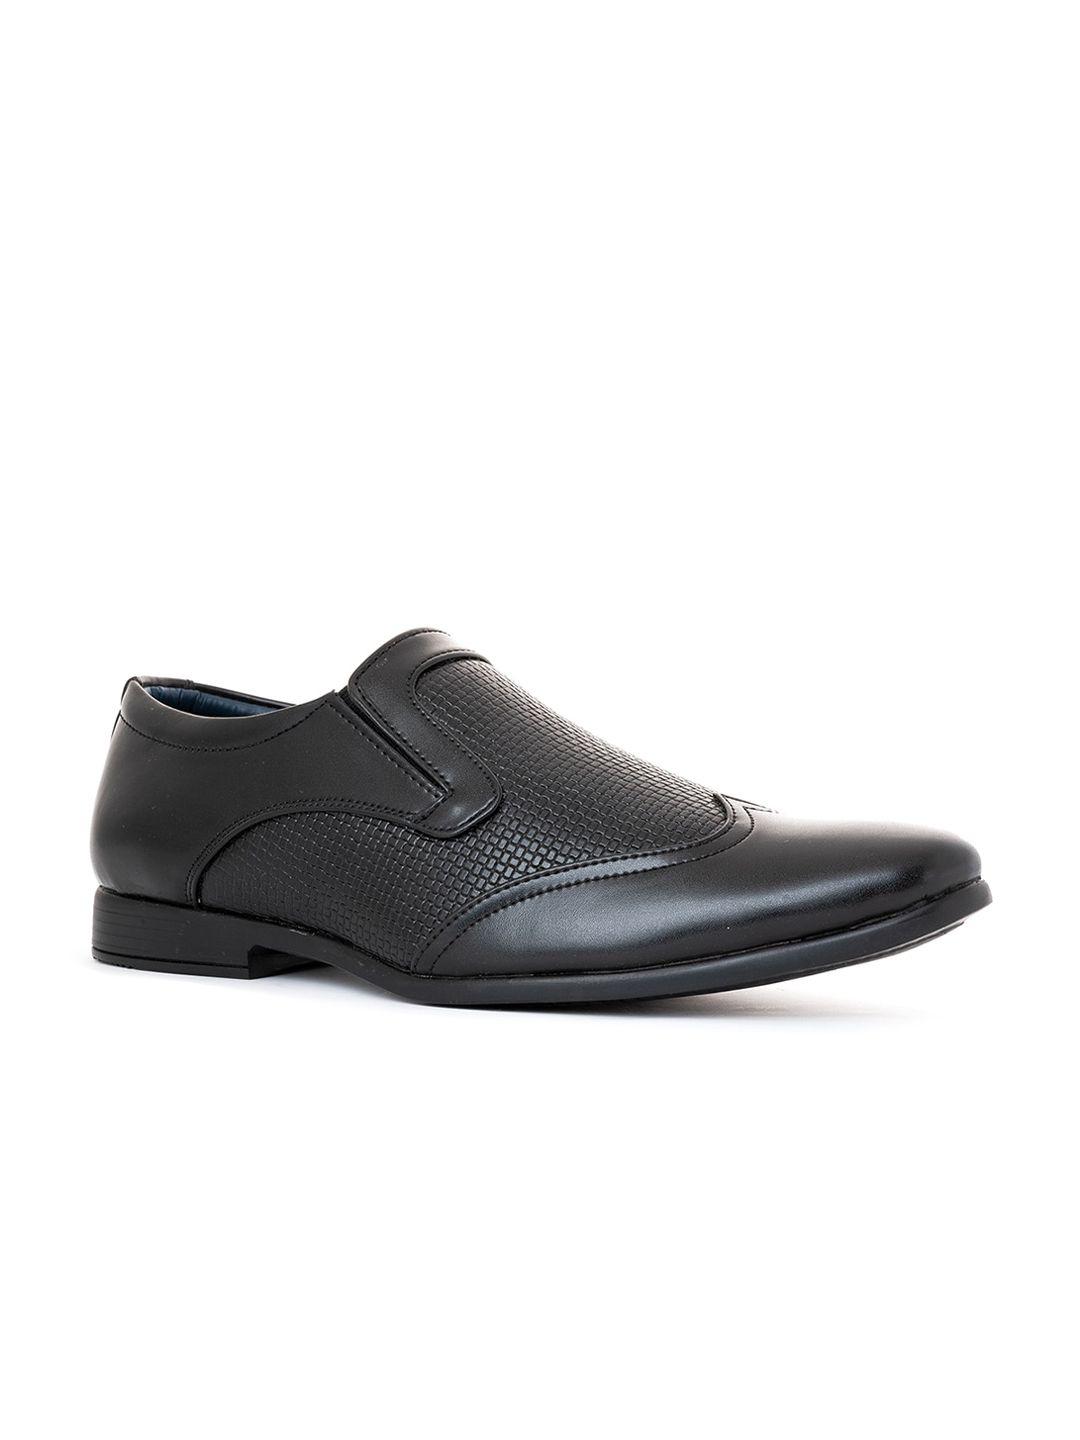 khadims-men-black-perforations-woven-design-slip-on-sneakers